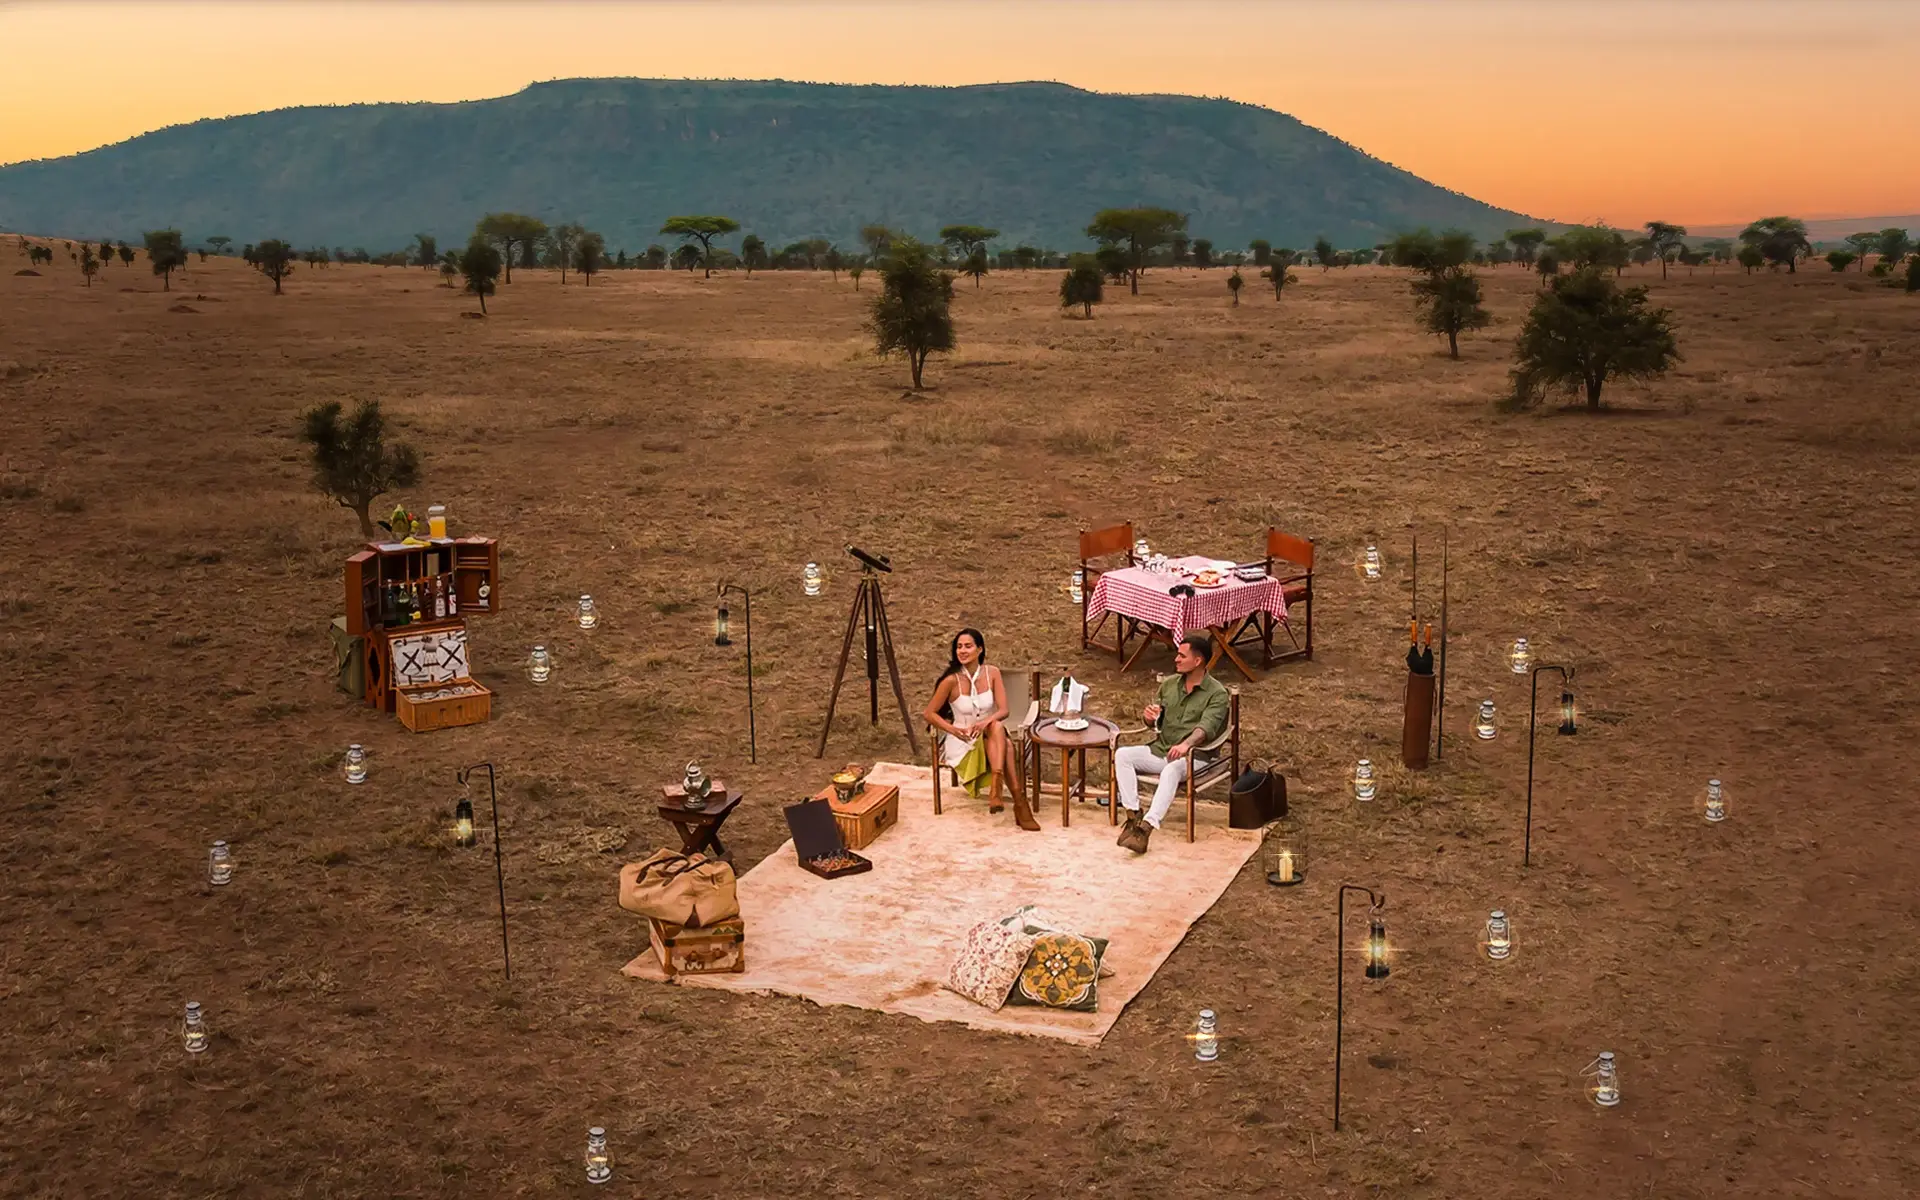 Sundowner on a luxury African safari